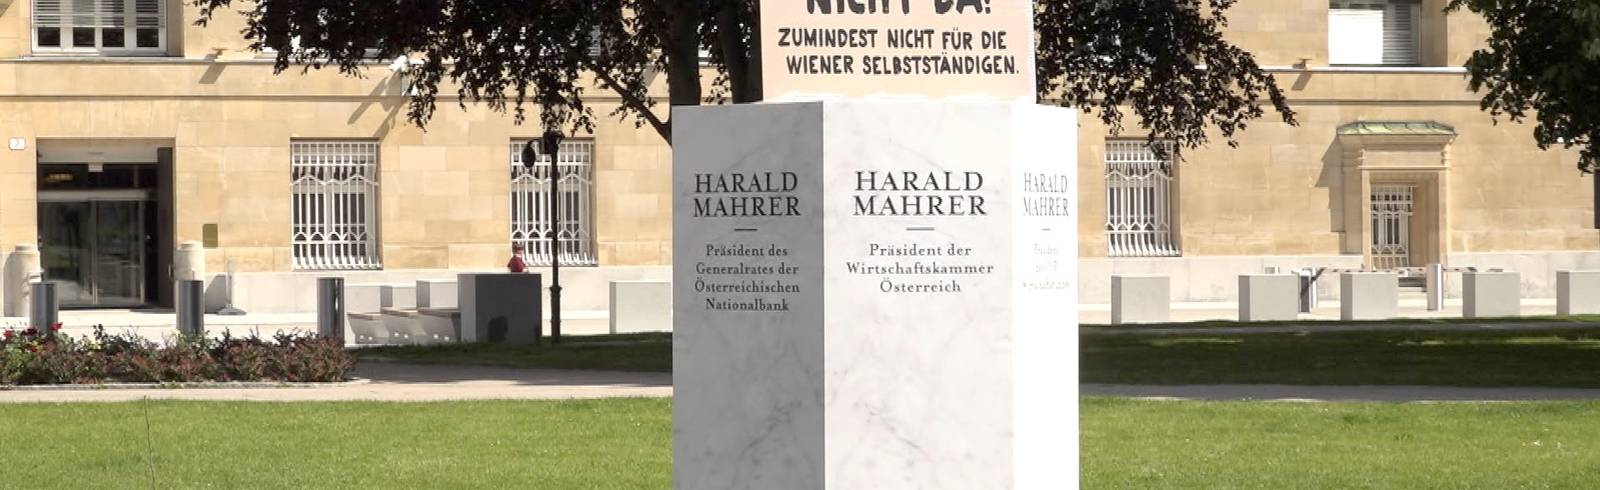 Kritik an Harald Mahrer